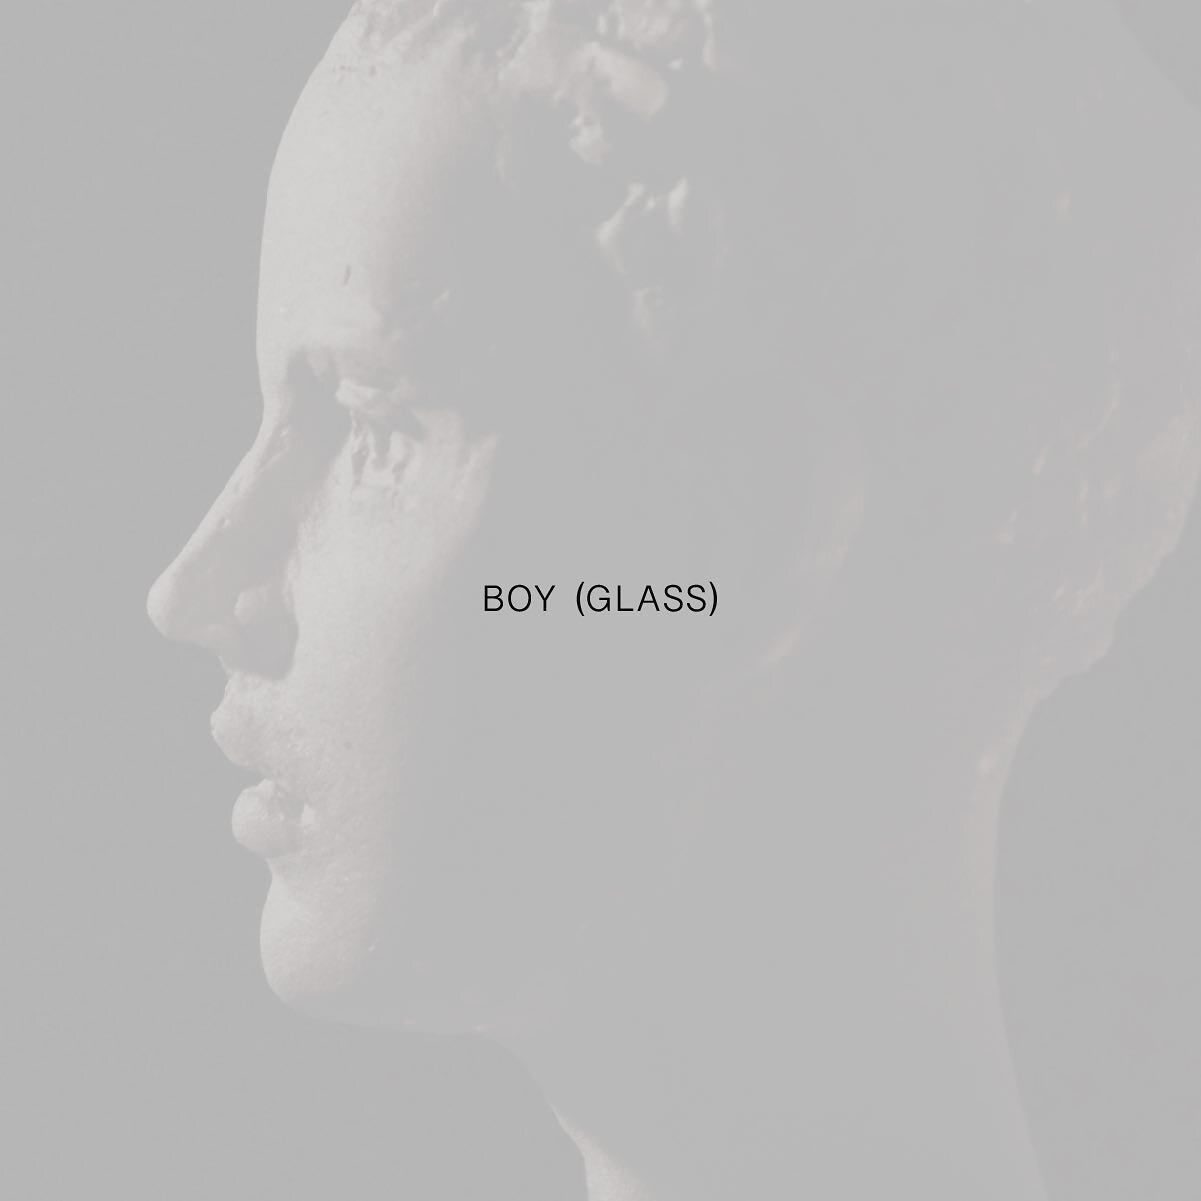 BOY (GLASS)